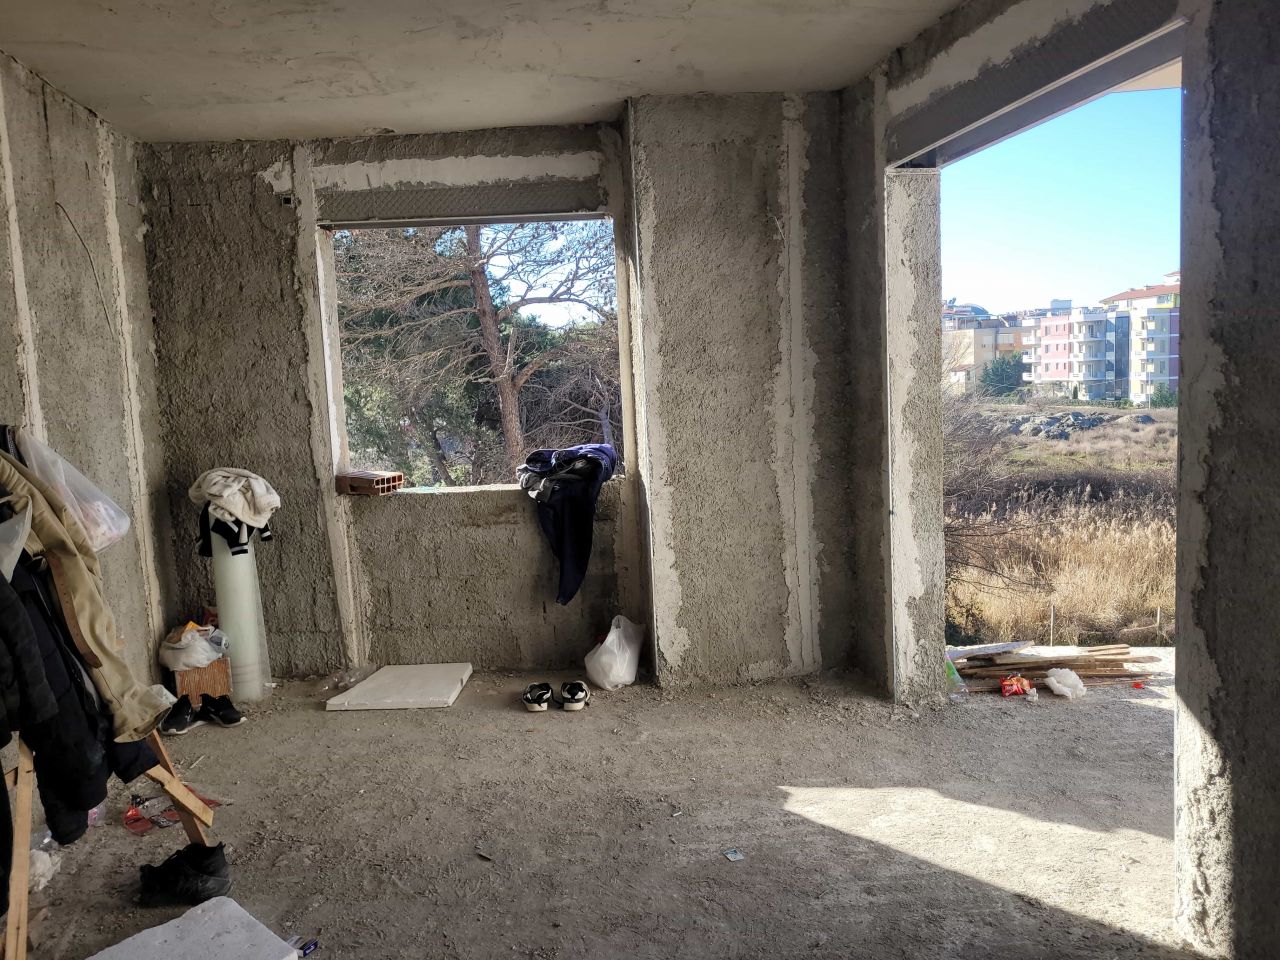 Eladó Lakások Epítés Alatt Egy Uj Epületben Golem Durres-ben Albániában